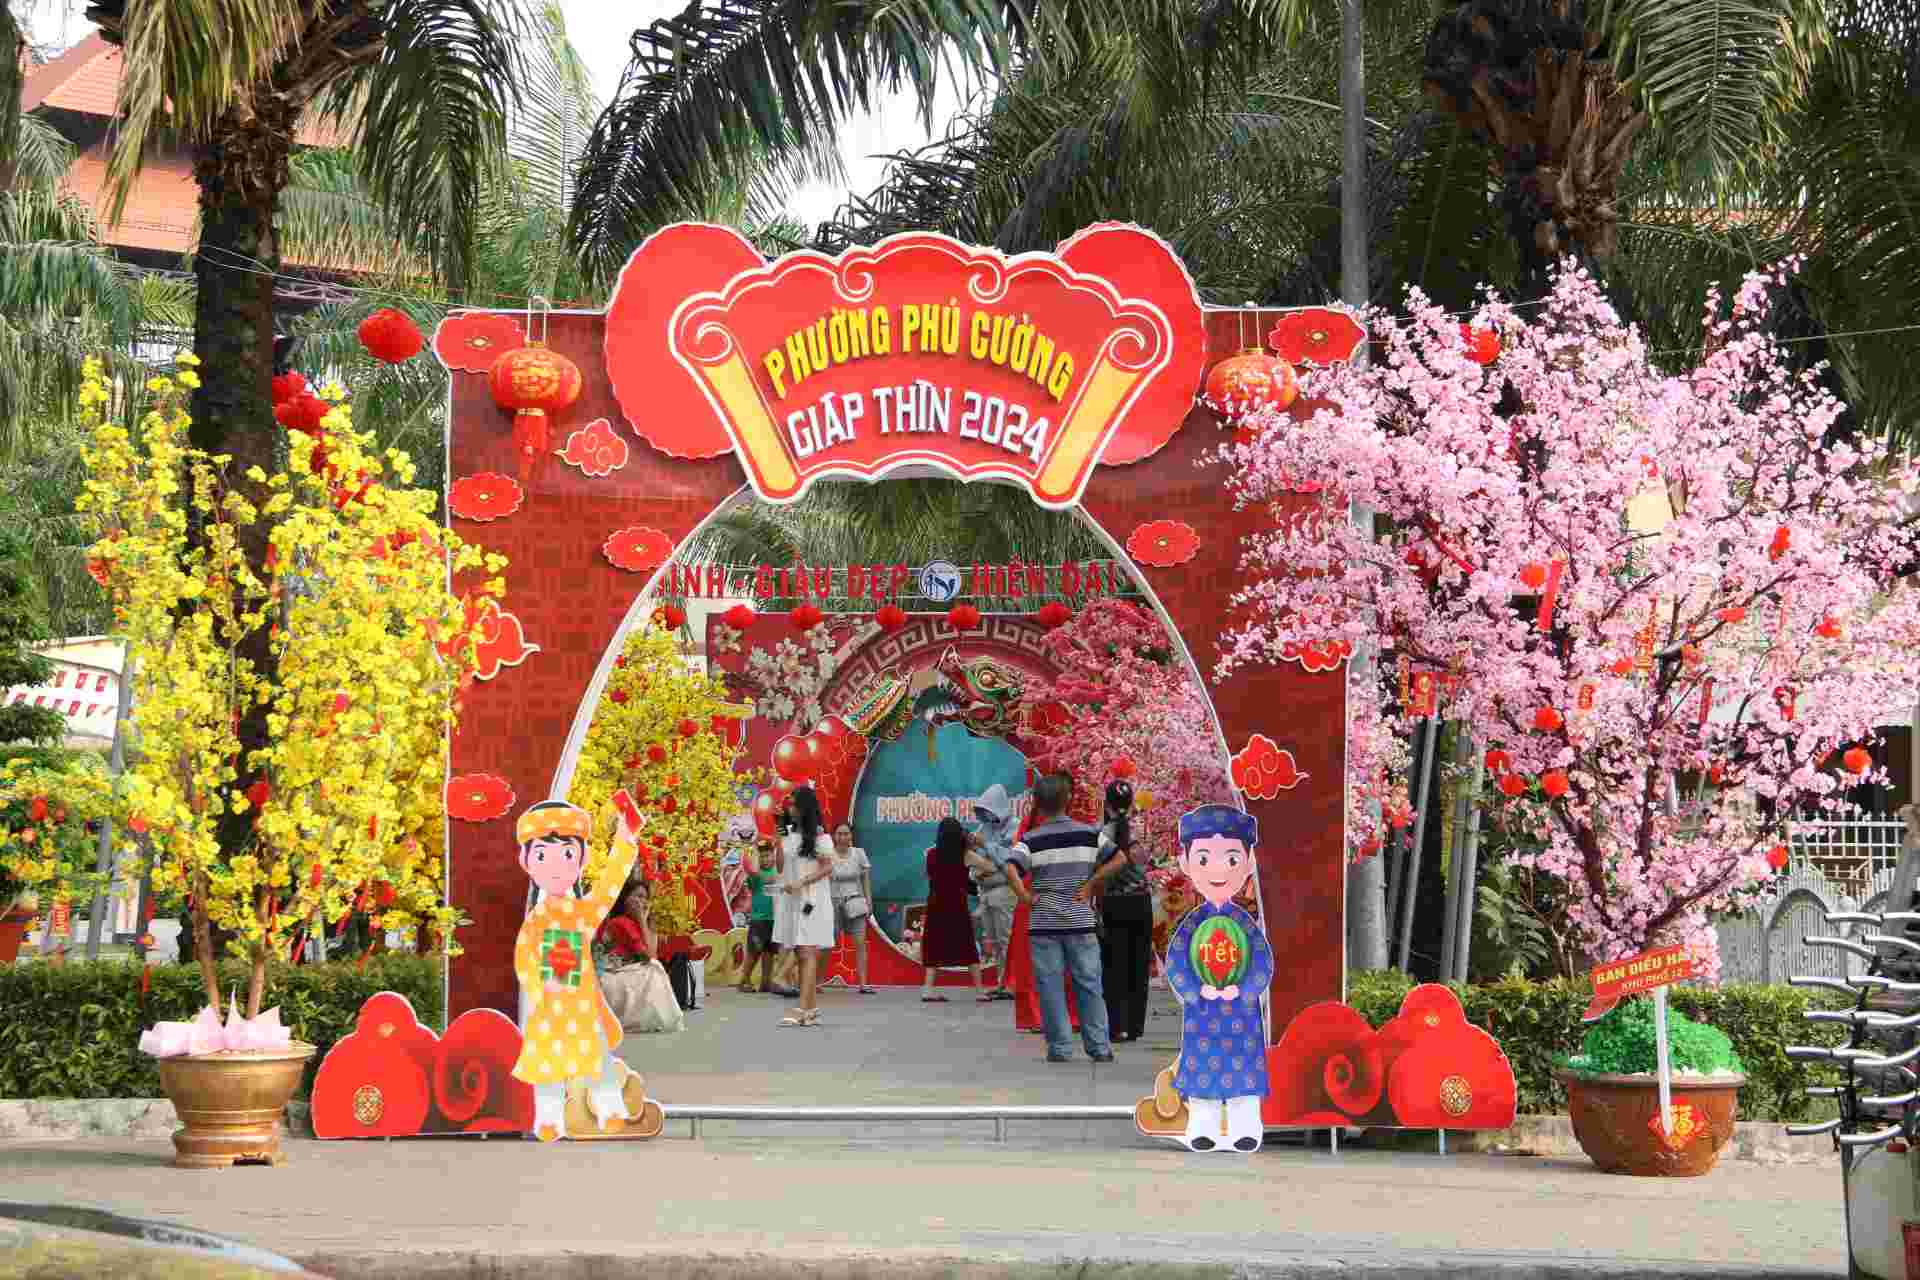 Đáng chú ý, thành phố Thủ Dầu Một là nơi có nhiều công viên mini ở các khu phố. Các công viên nhỏ này cũng được trang trí lộng lẫy tạo cảnh quan để người dân được vui chơi.